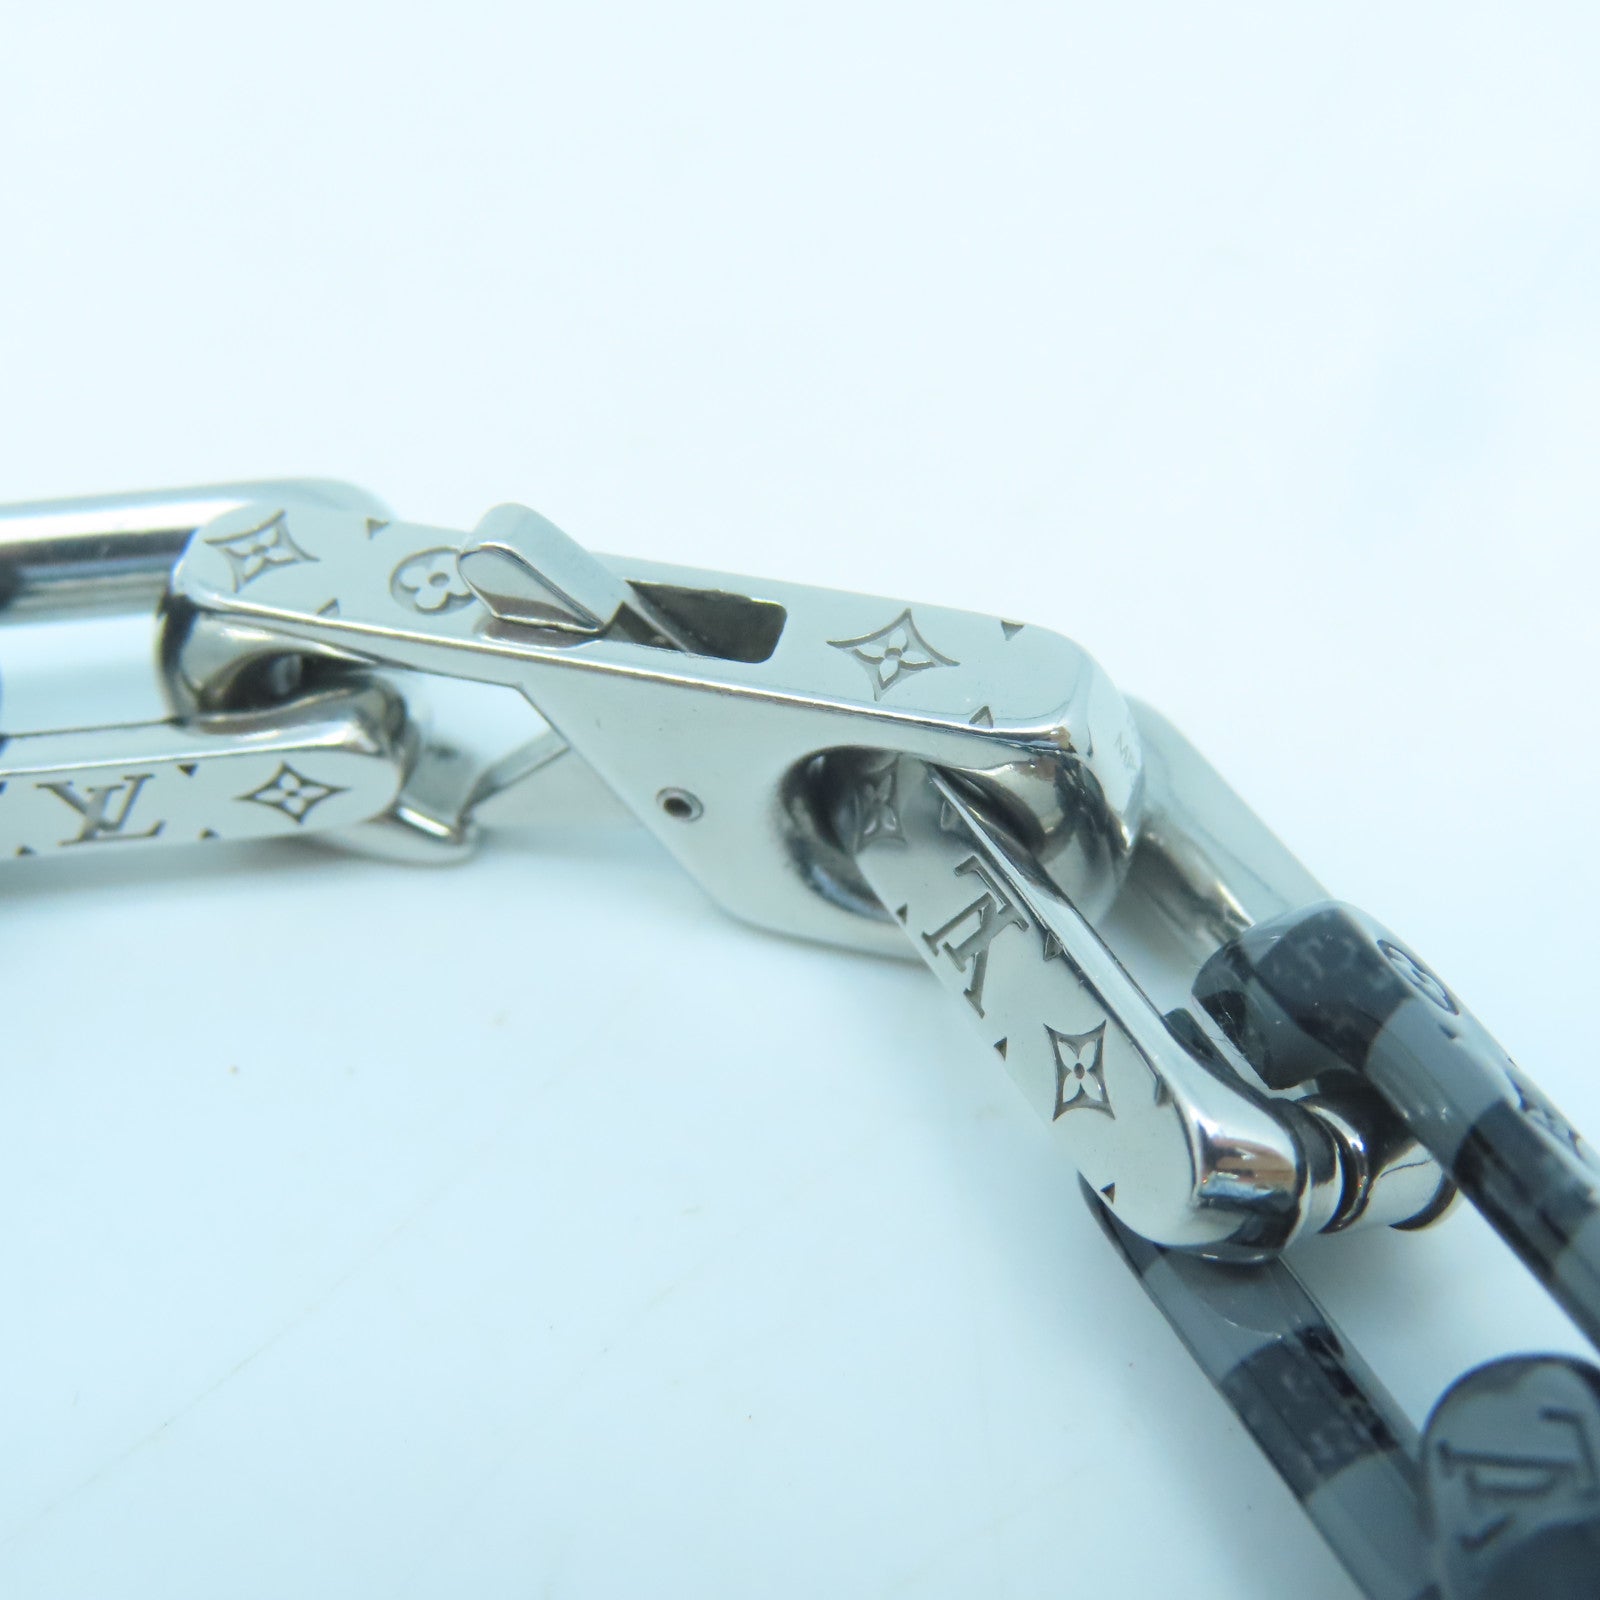 Louis Vuitton Silver Damier Chain Bracelet Silvery Multiple colors